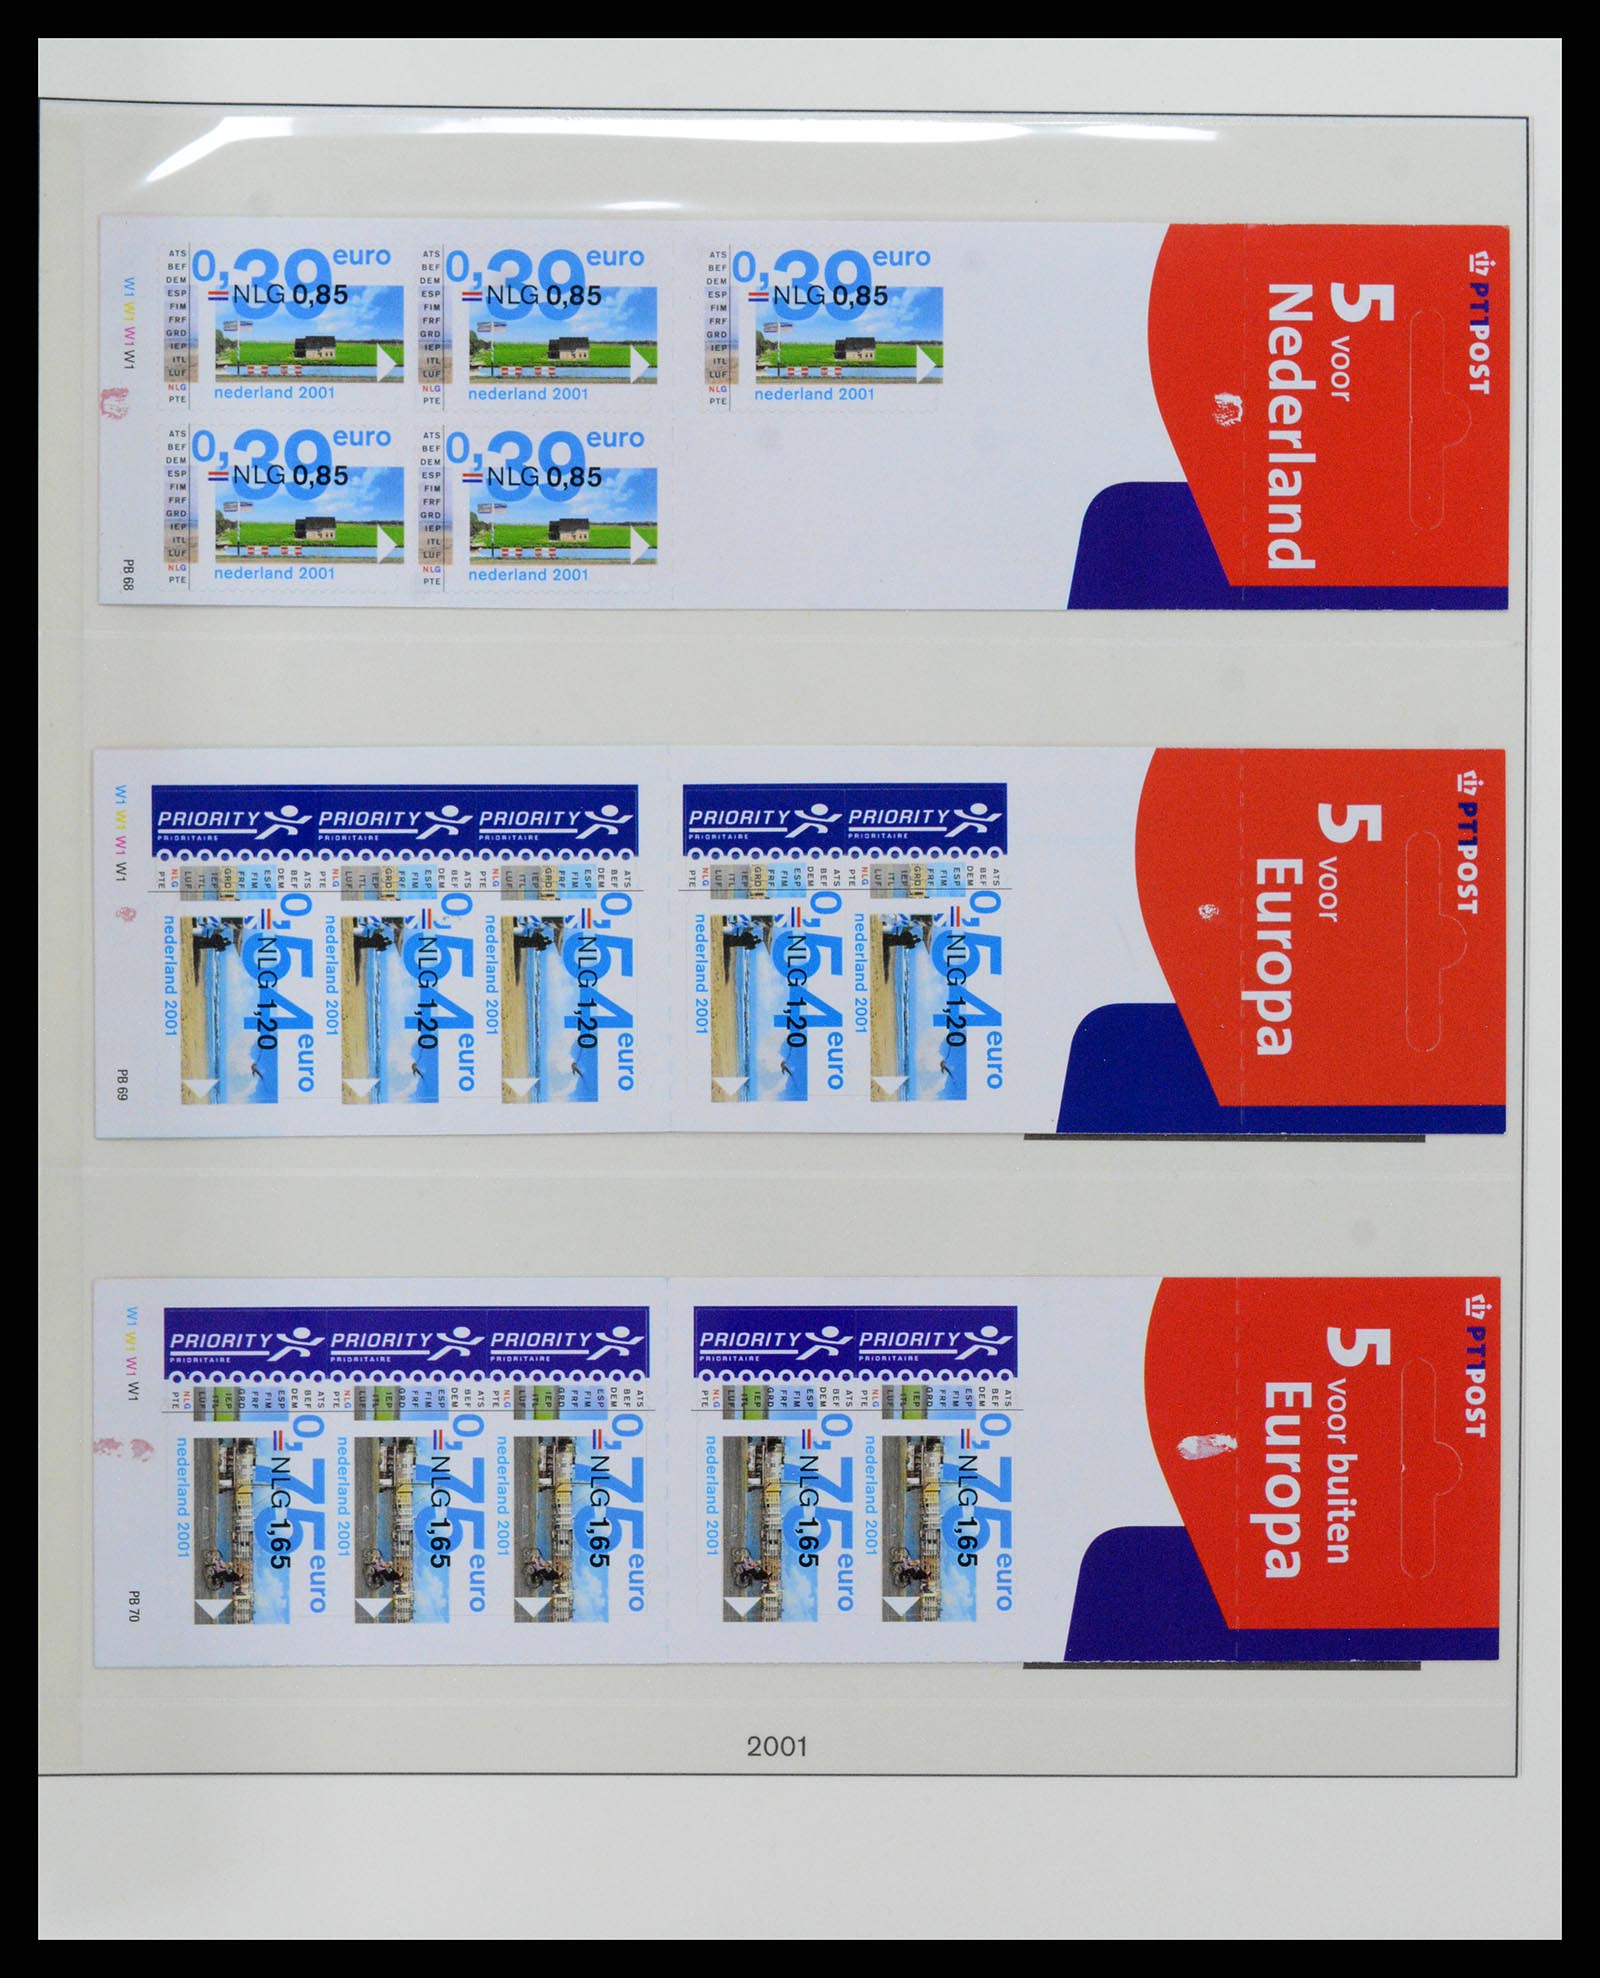 37994 037 - Stamp Collection 37994 Netherlands stampbooklets 1964-2002.